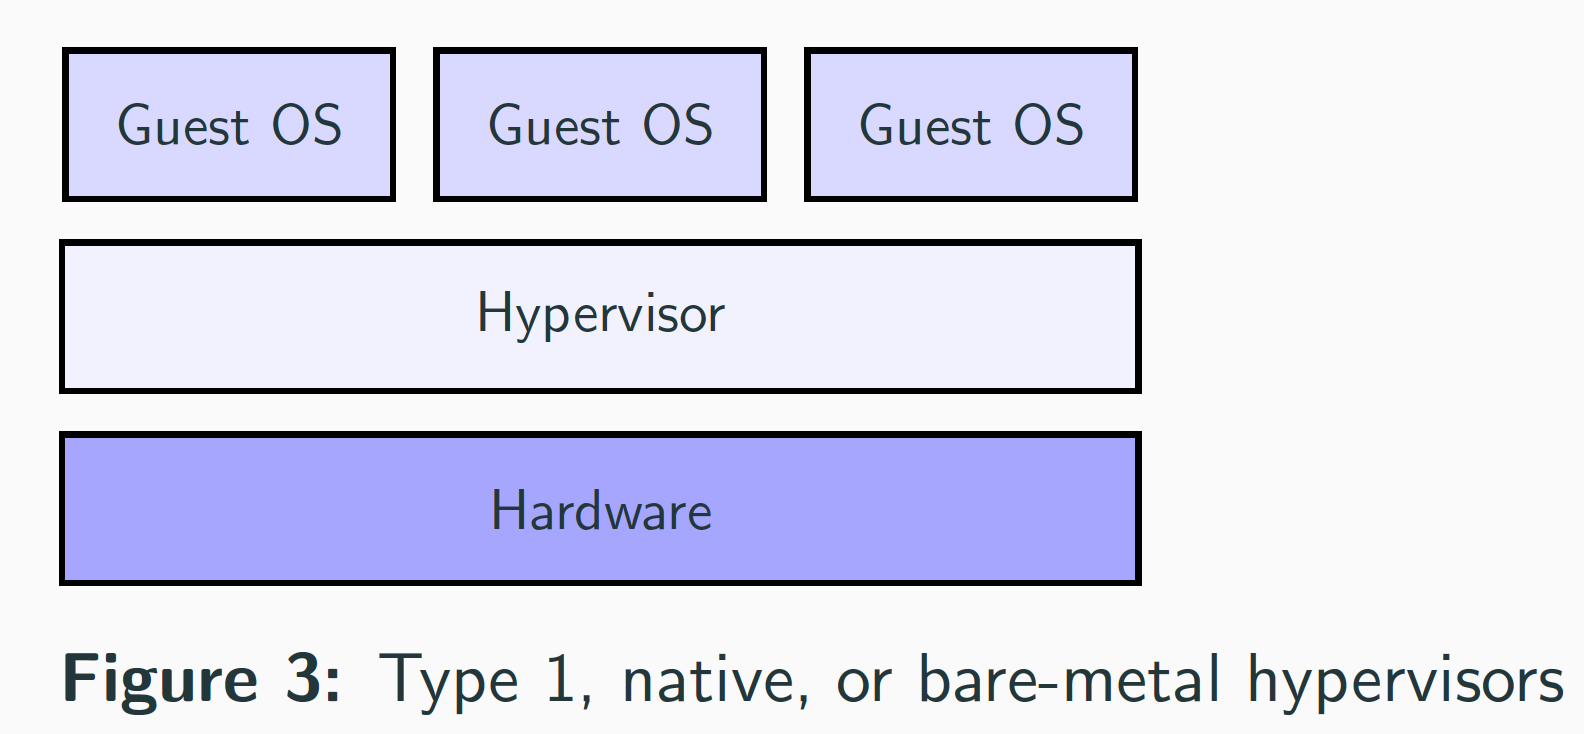 Type 1 Hypervisor